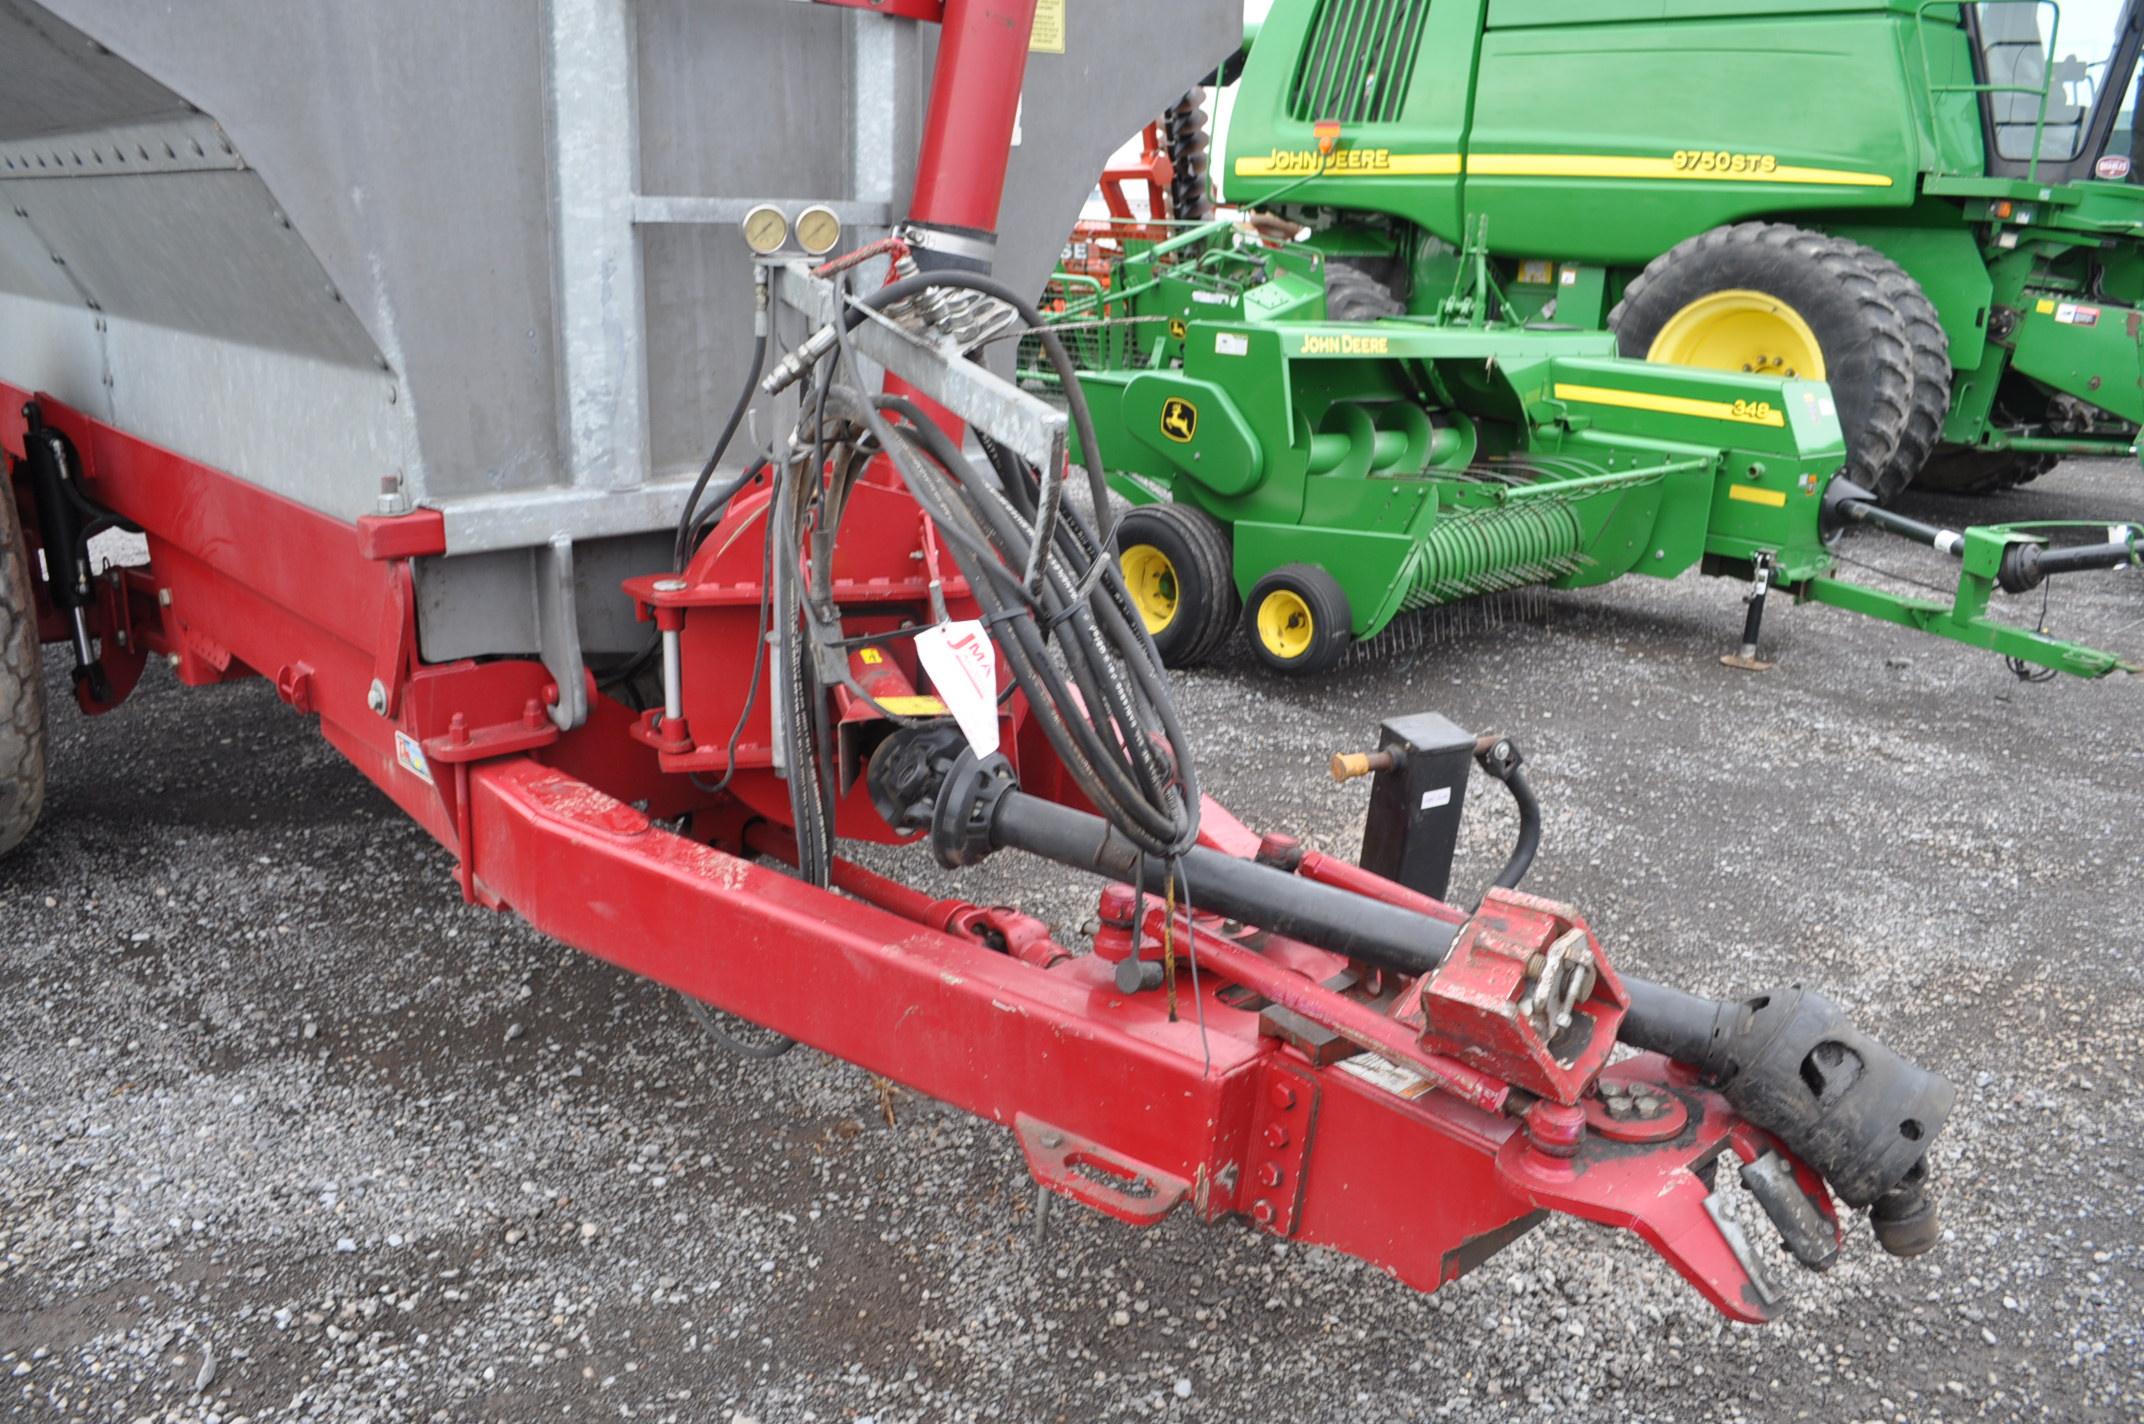 DM Galva 4800 liq. manure spreader w/ hyd suspension, steering, 28L-26 rubber, galvanized steel, sma